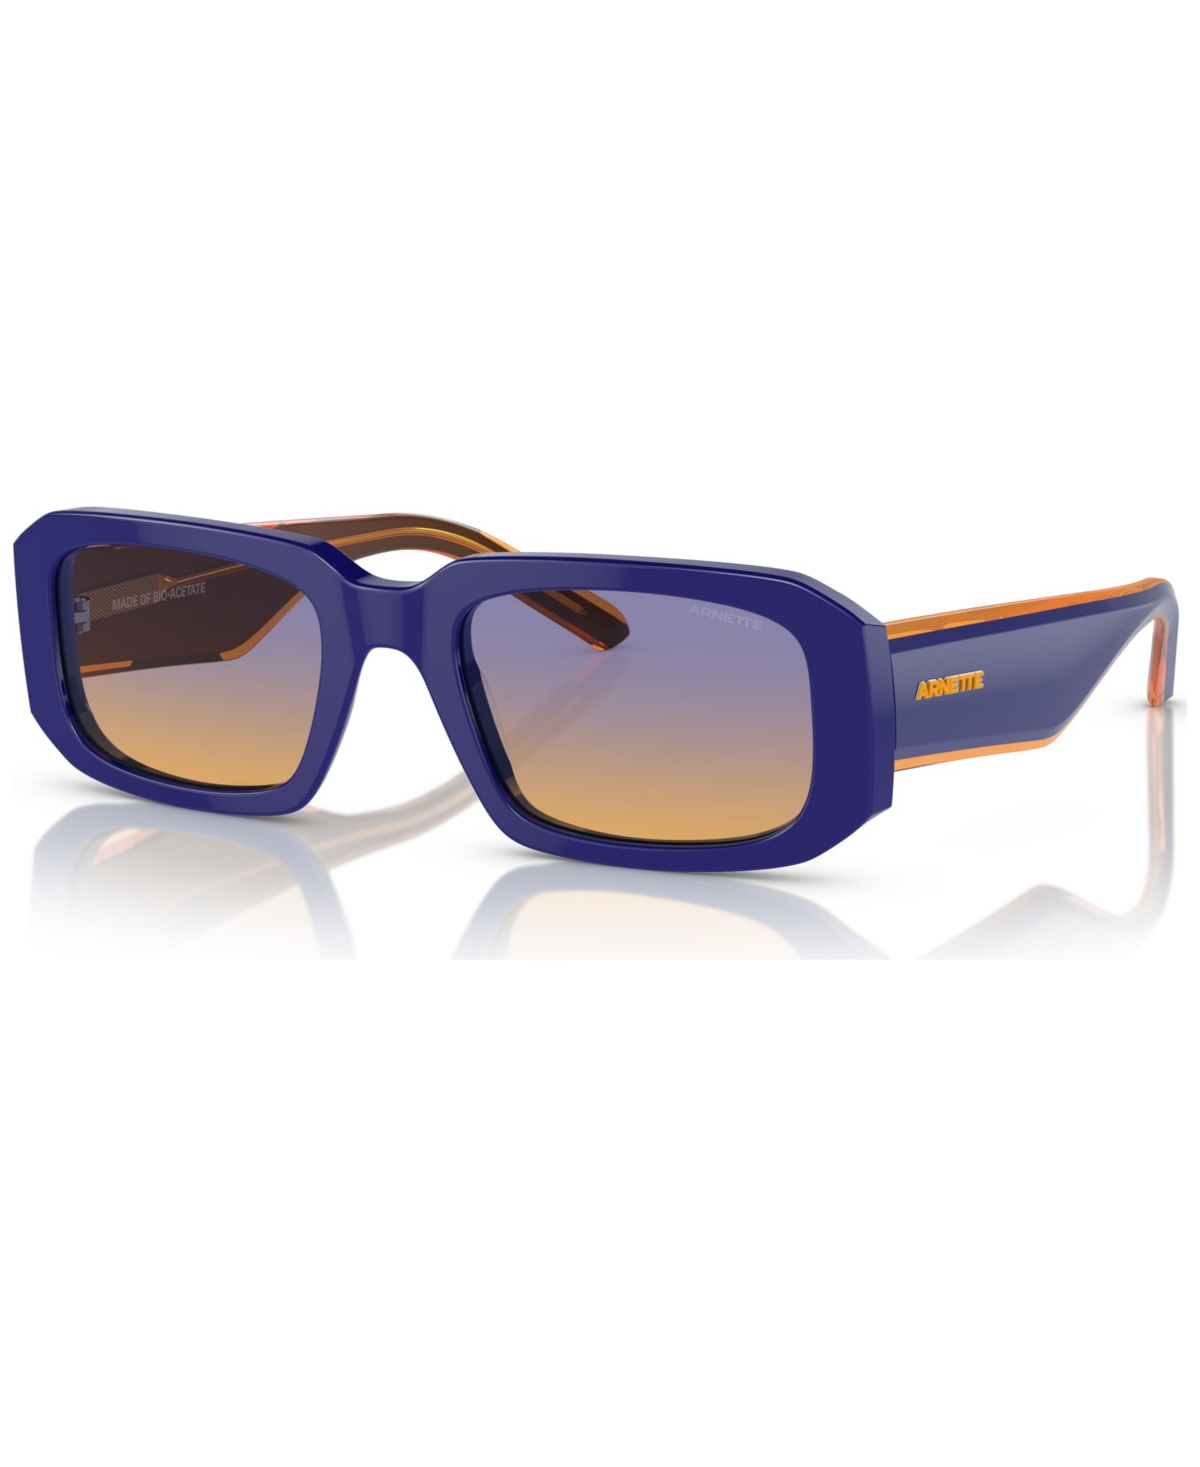 Men's Thekidd Sunglasses, AN431853-x 53 - Blue